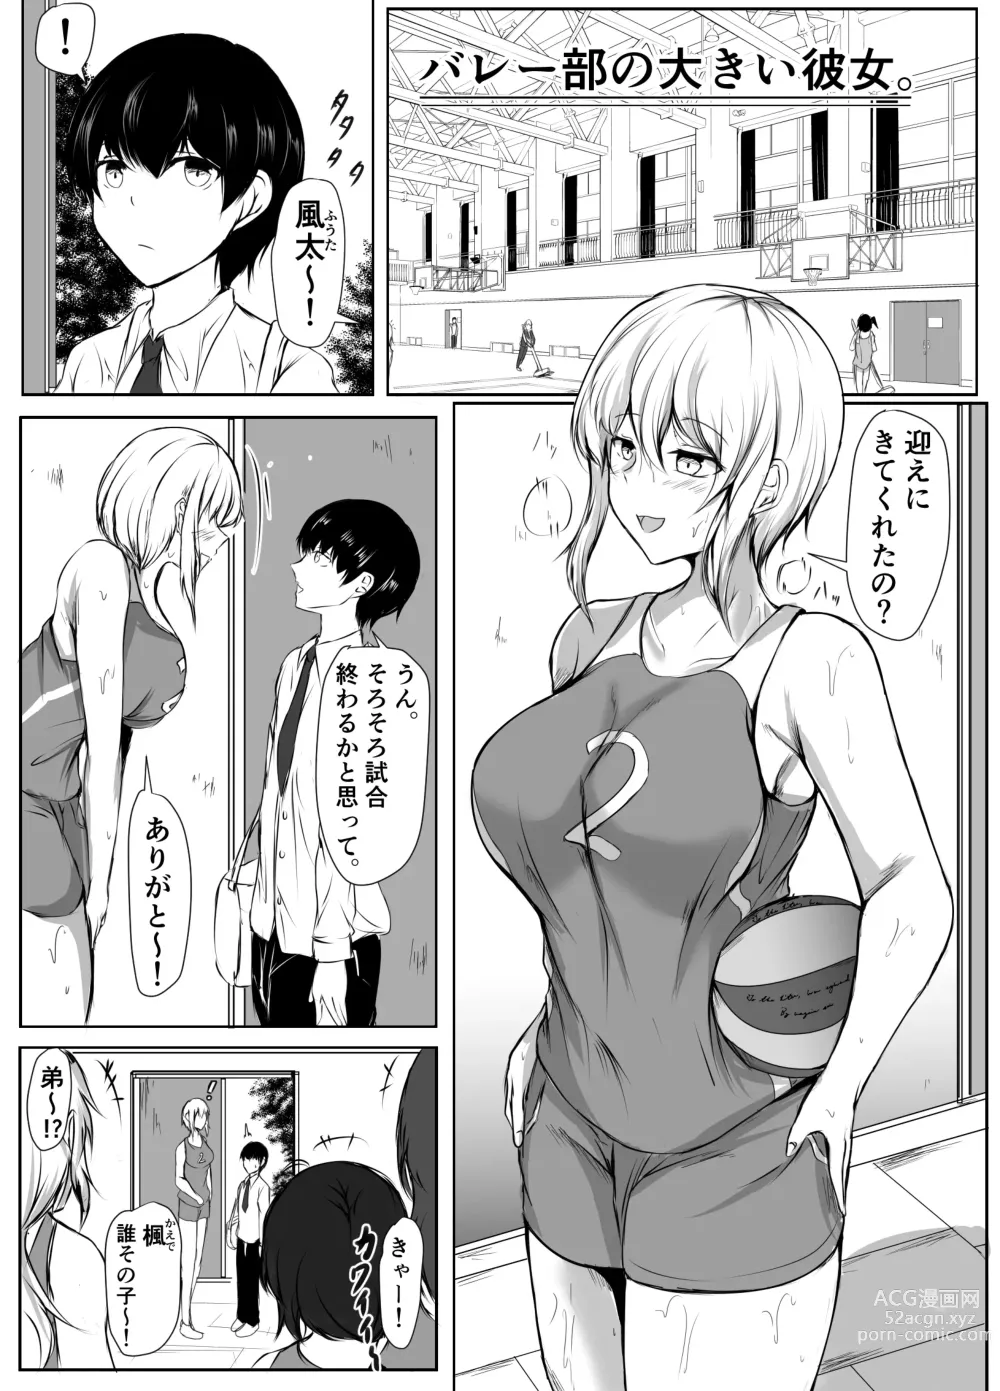 Page 2 of doujinshi Volley-bu no Ookii Kanojo to Chiisai Kareshi no Hanashi